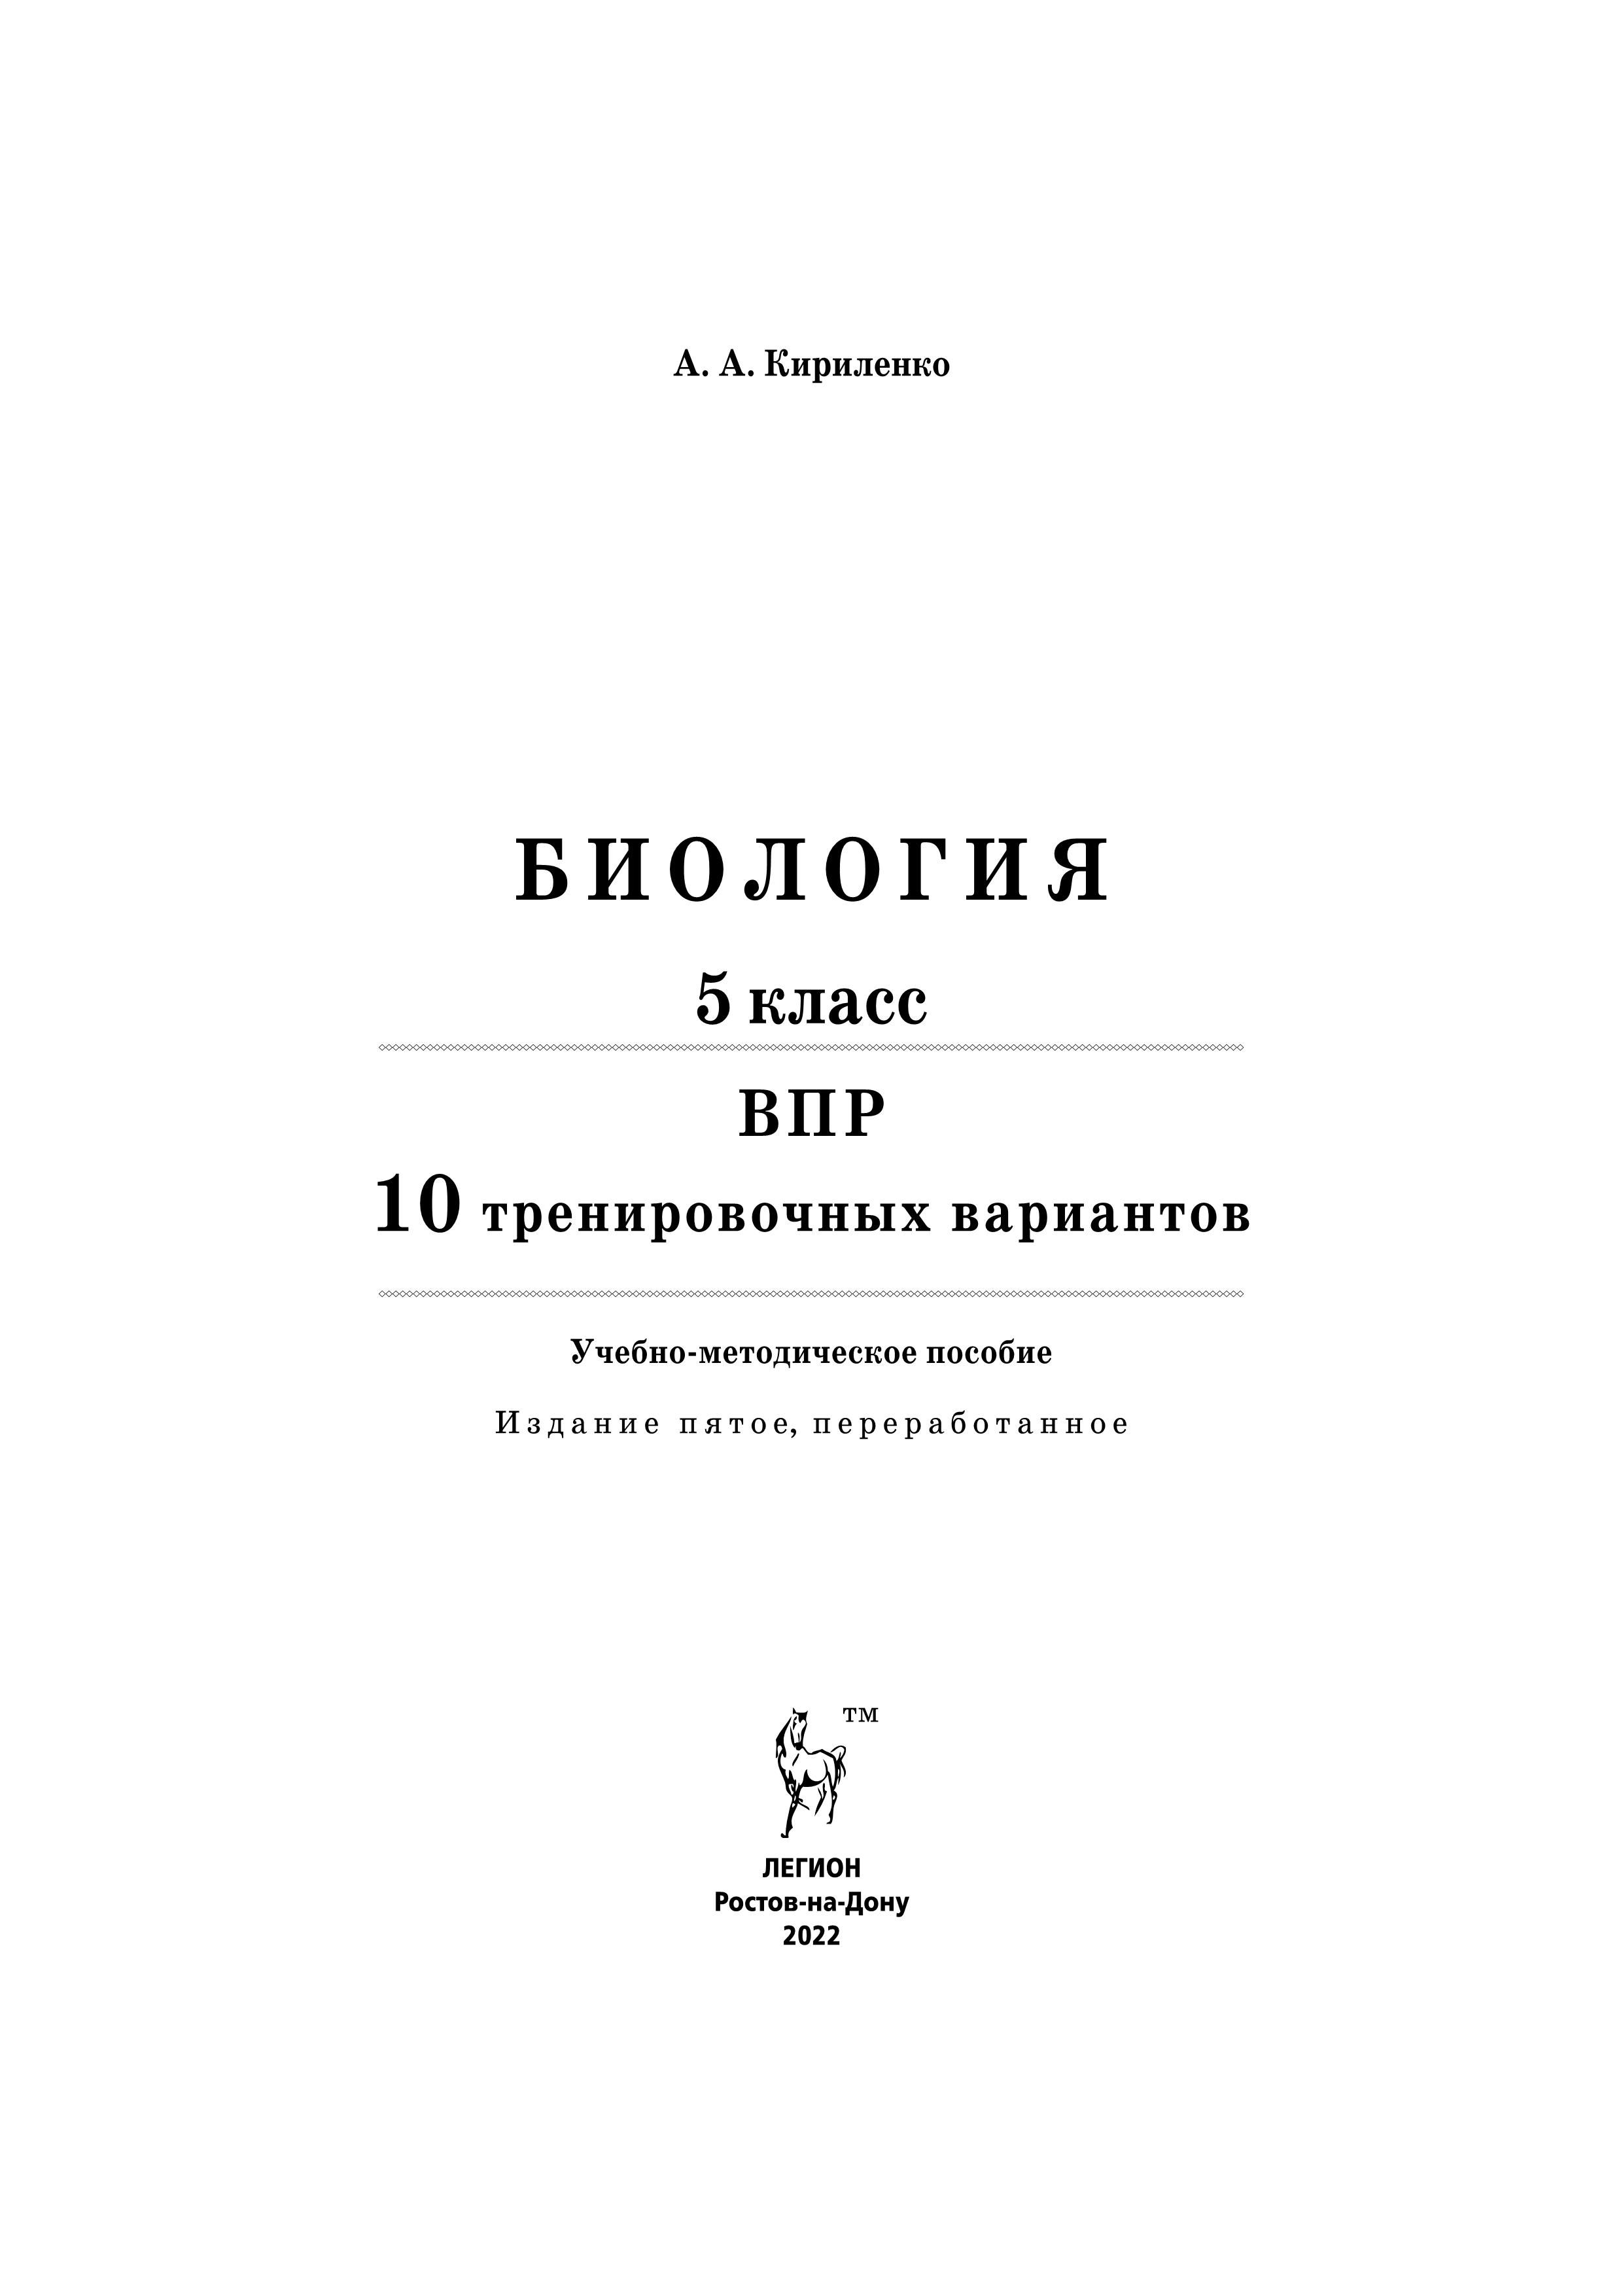 Биология. 5 класс. ВПР. 10 тренировочных вариантов. 5-е изд.